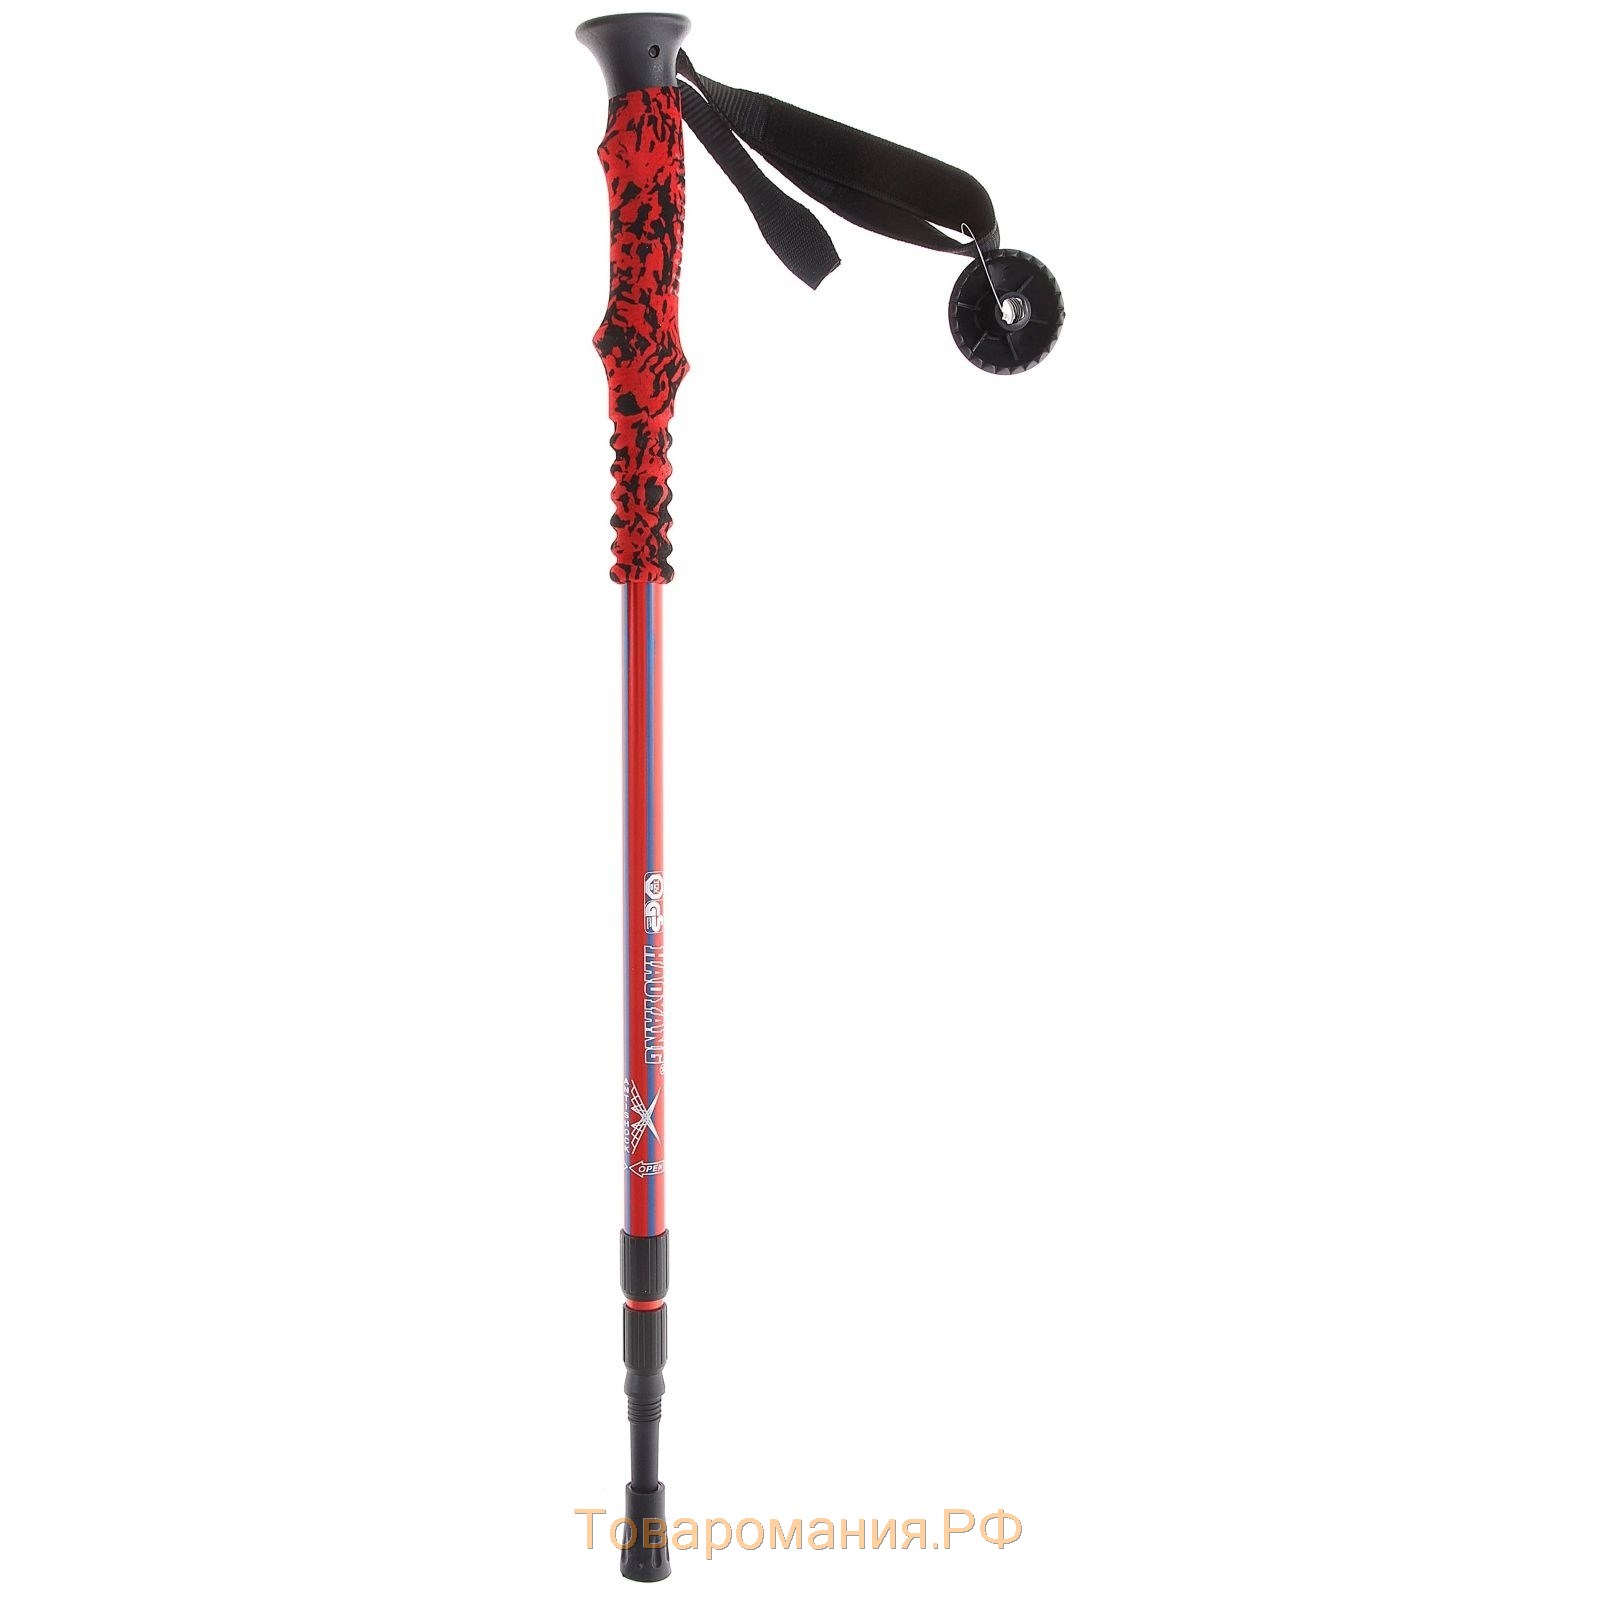 Палка для скандинавской ходьбы ONLITOP, телескопическая, 3 секции, алюминий, до 135 см, 1 шт., цвет красный/синий,